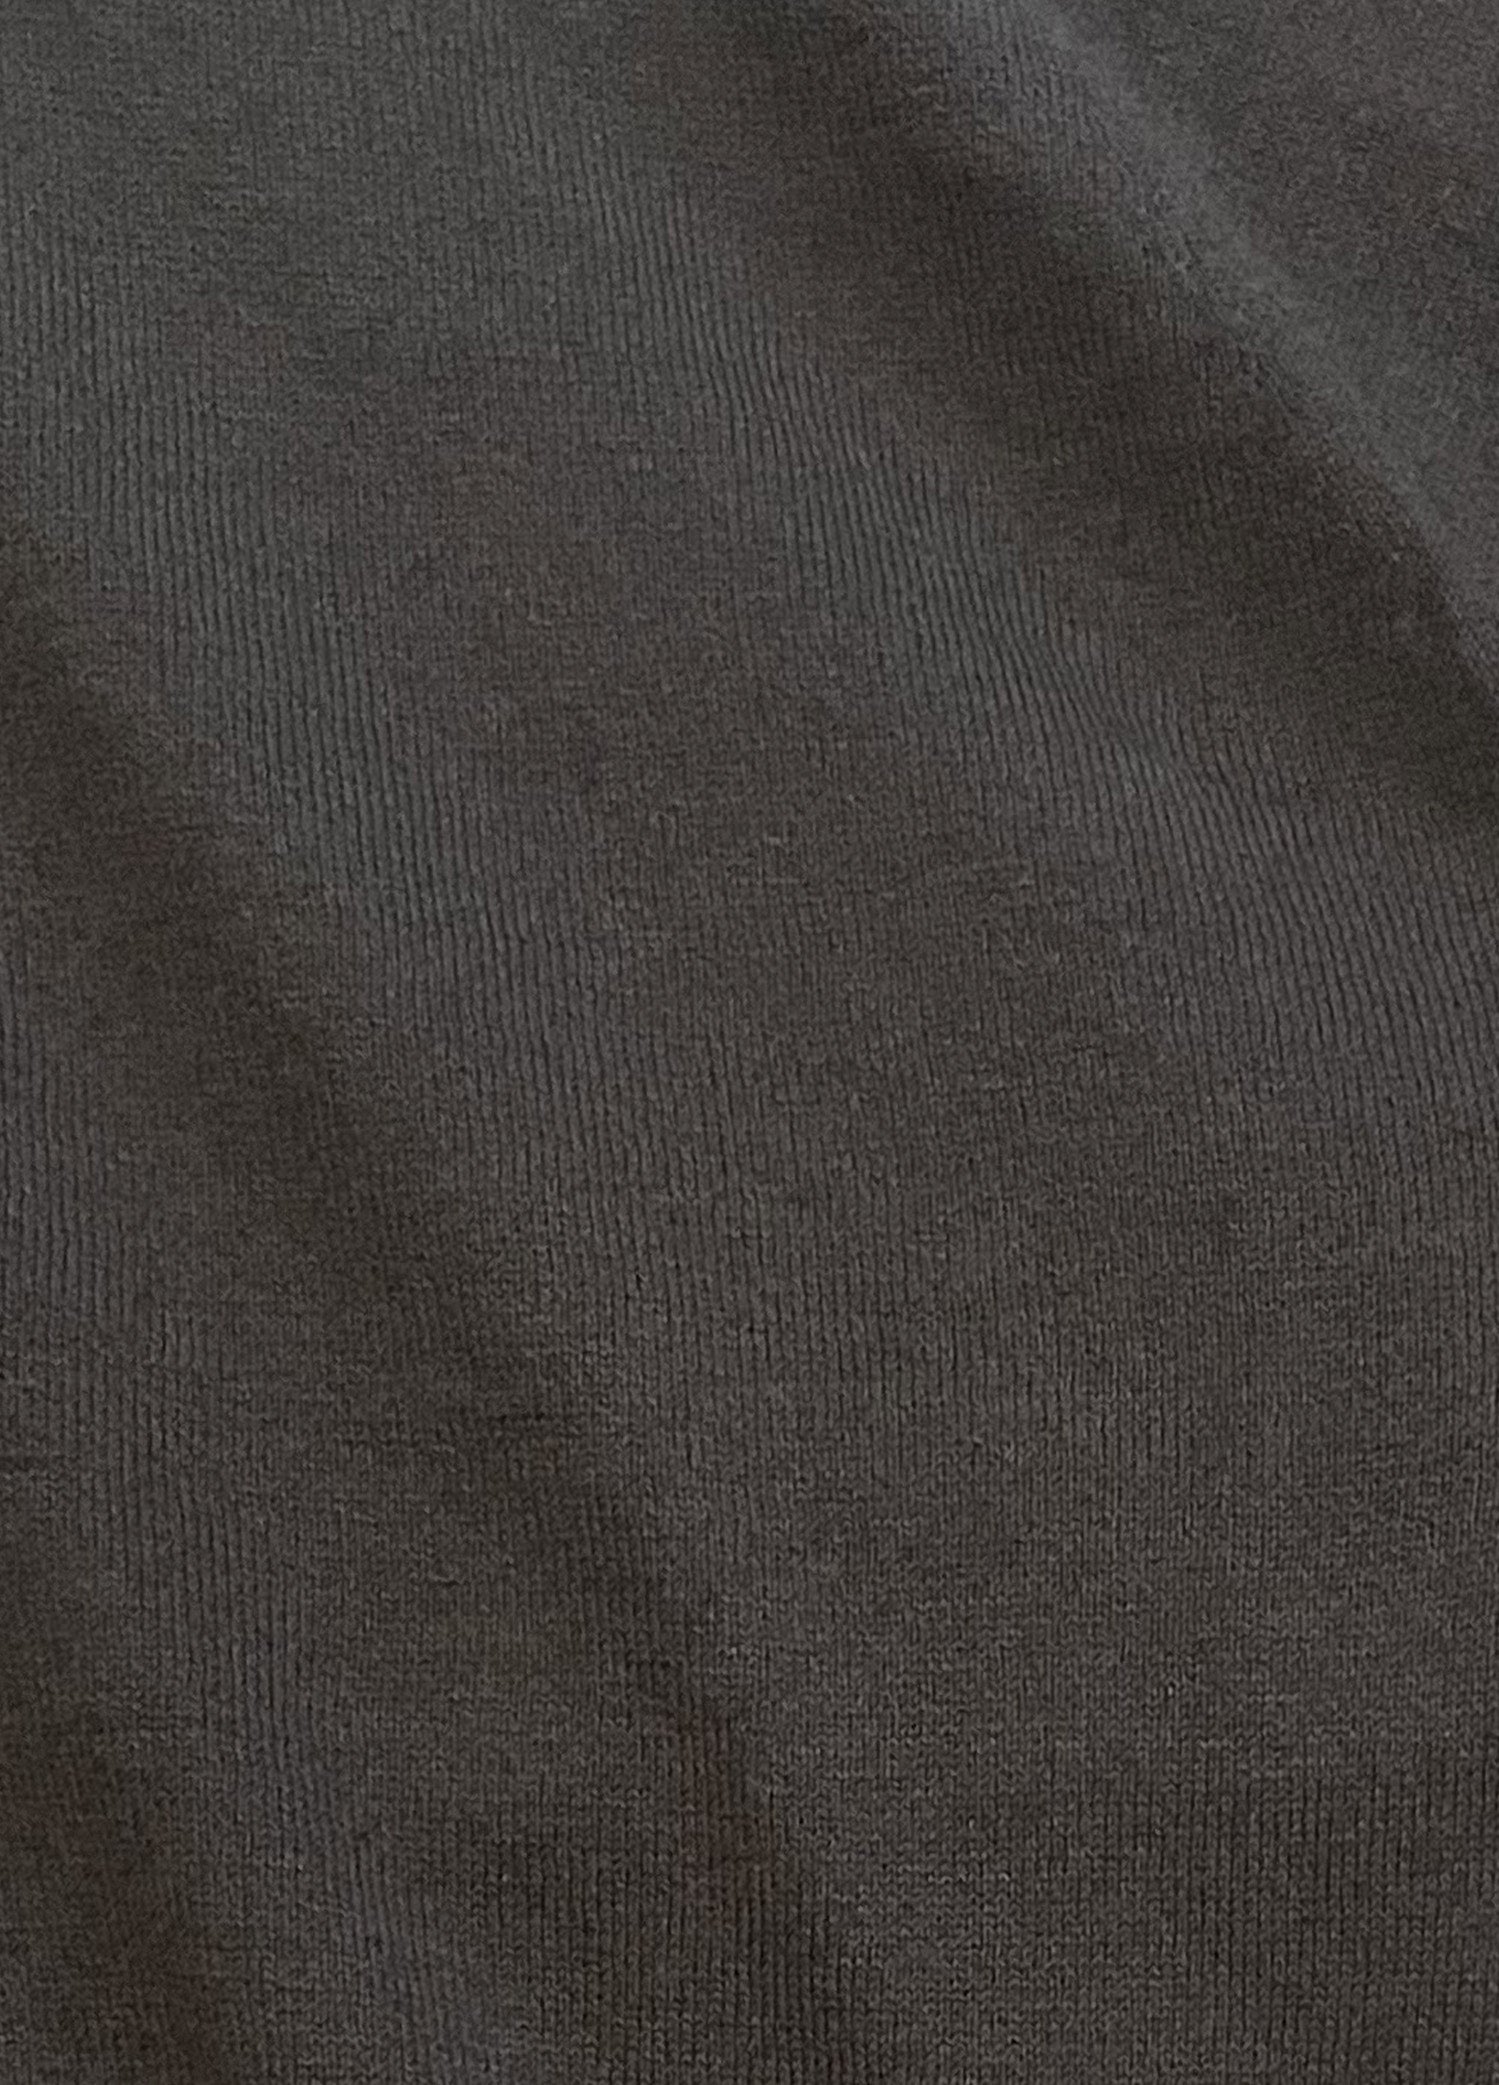 pas-de-calais-botanical-dye-cardigan-knit-2341-charcoal